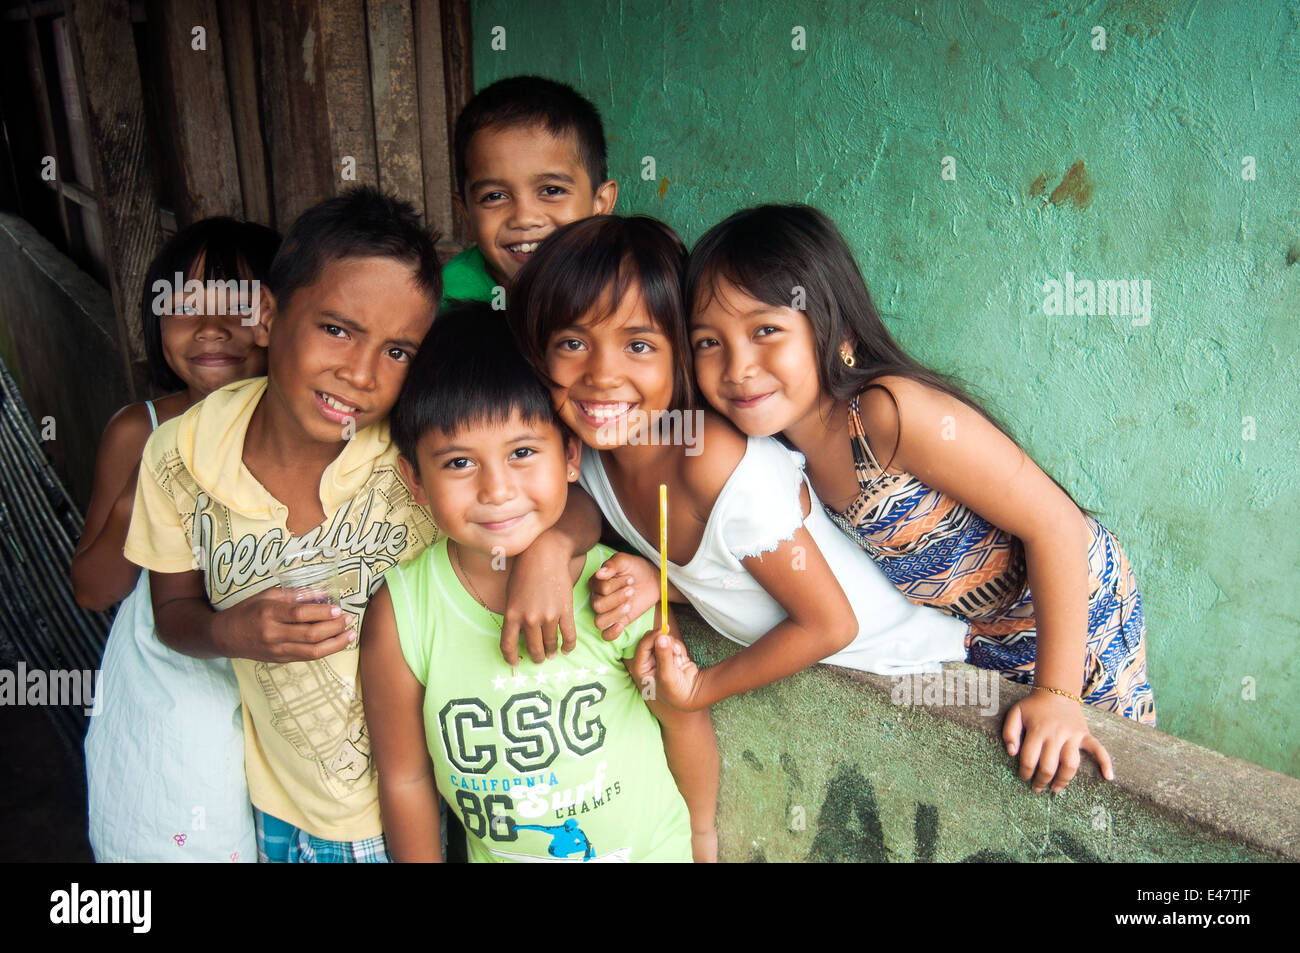 Les enfants, zone portuaire, CBD, Durango, Podji, Mindanao, Philippines Banque D'Images